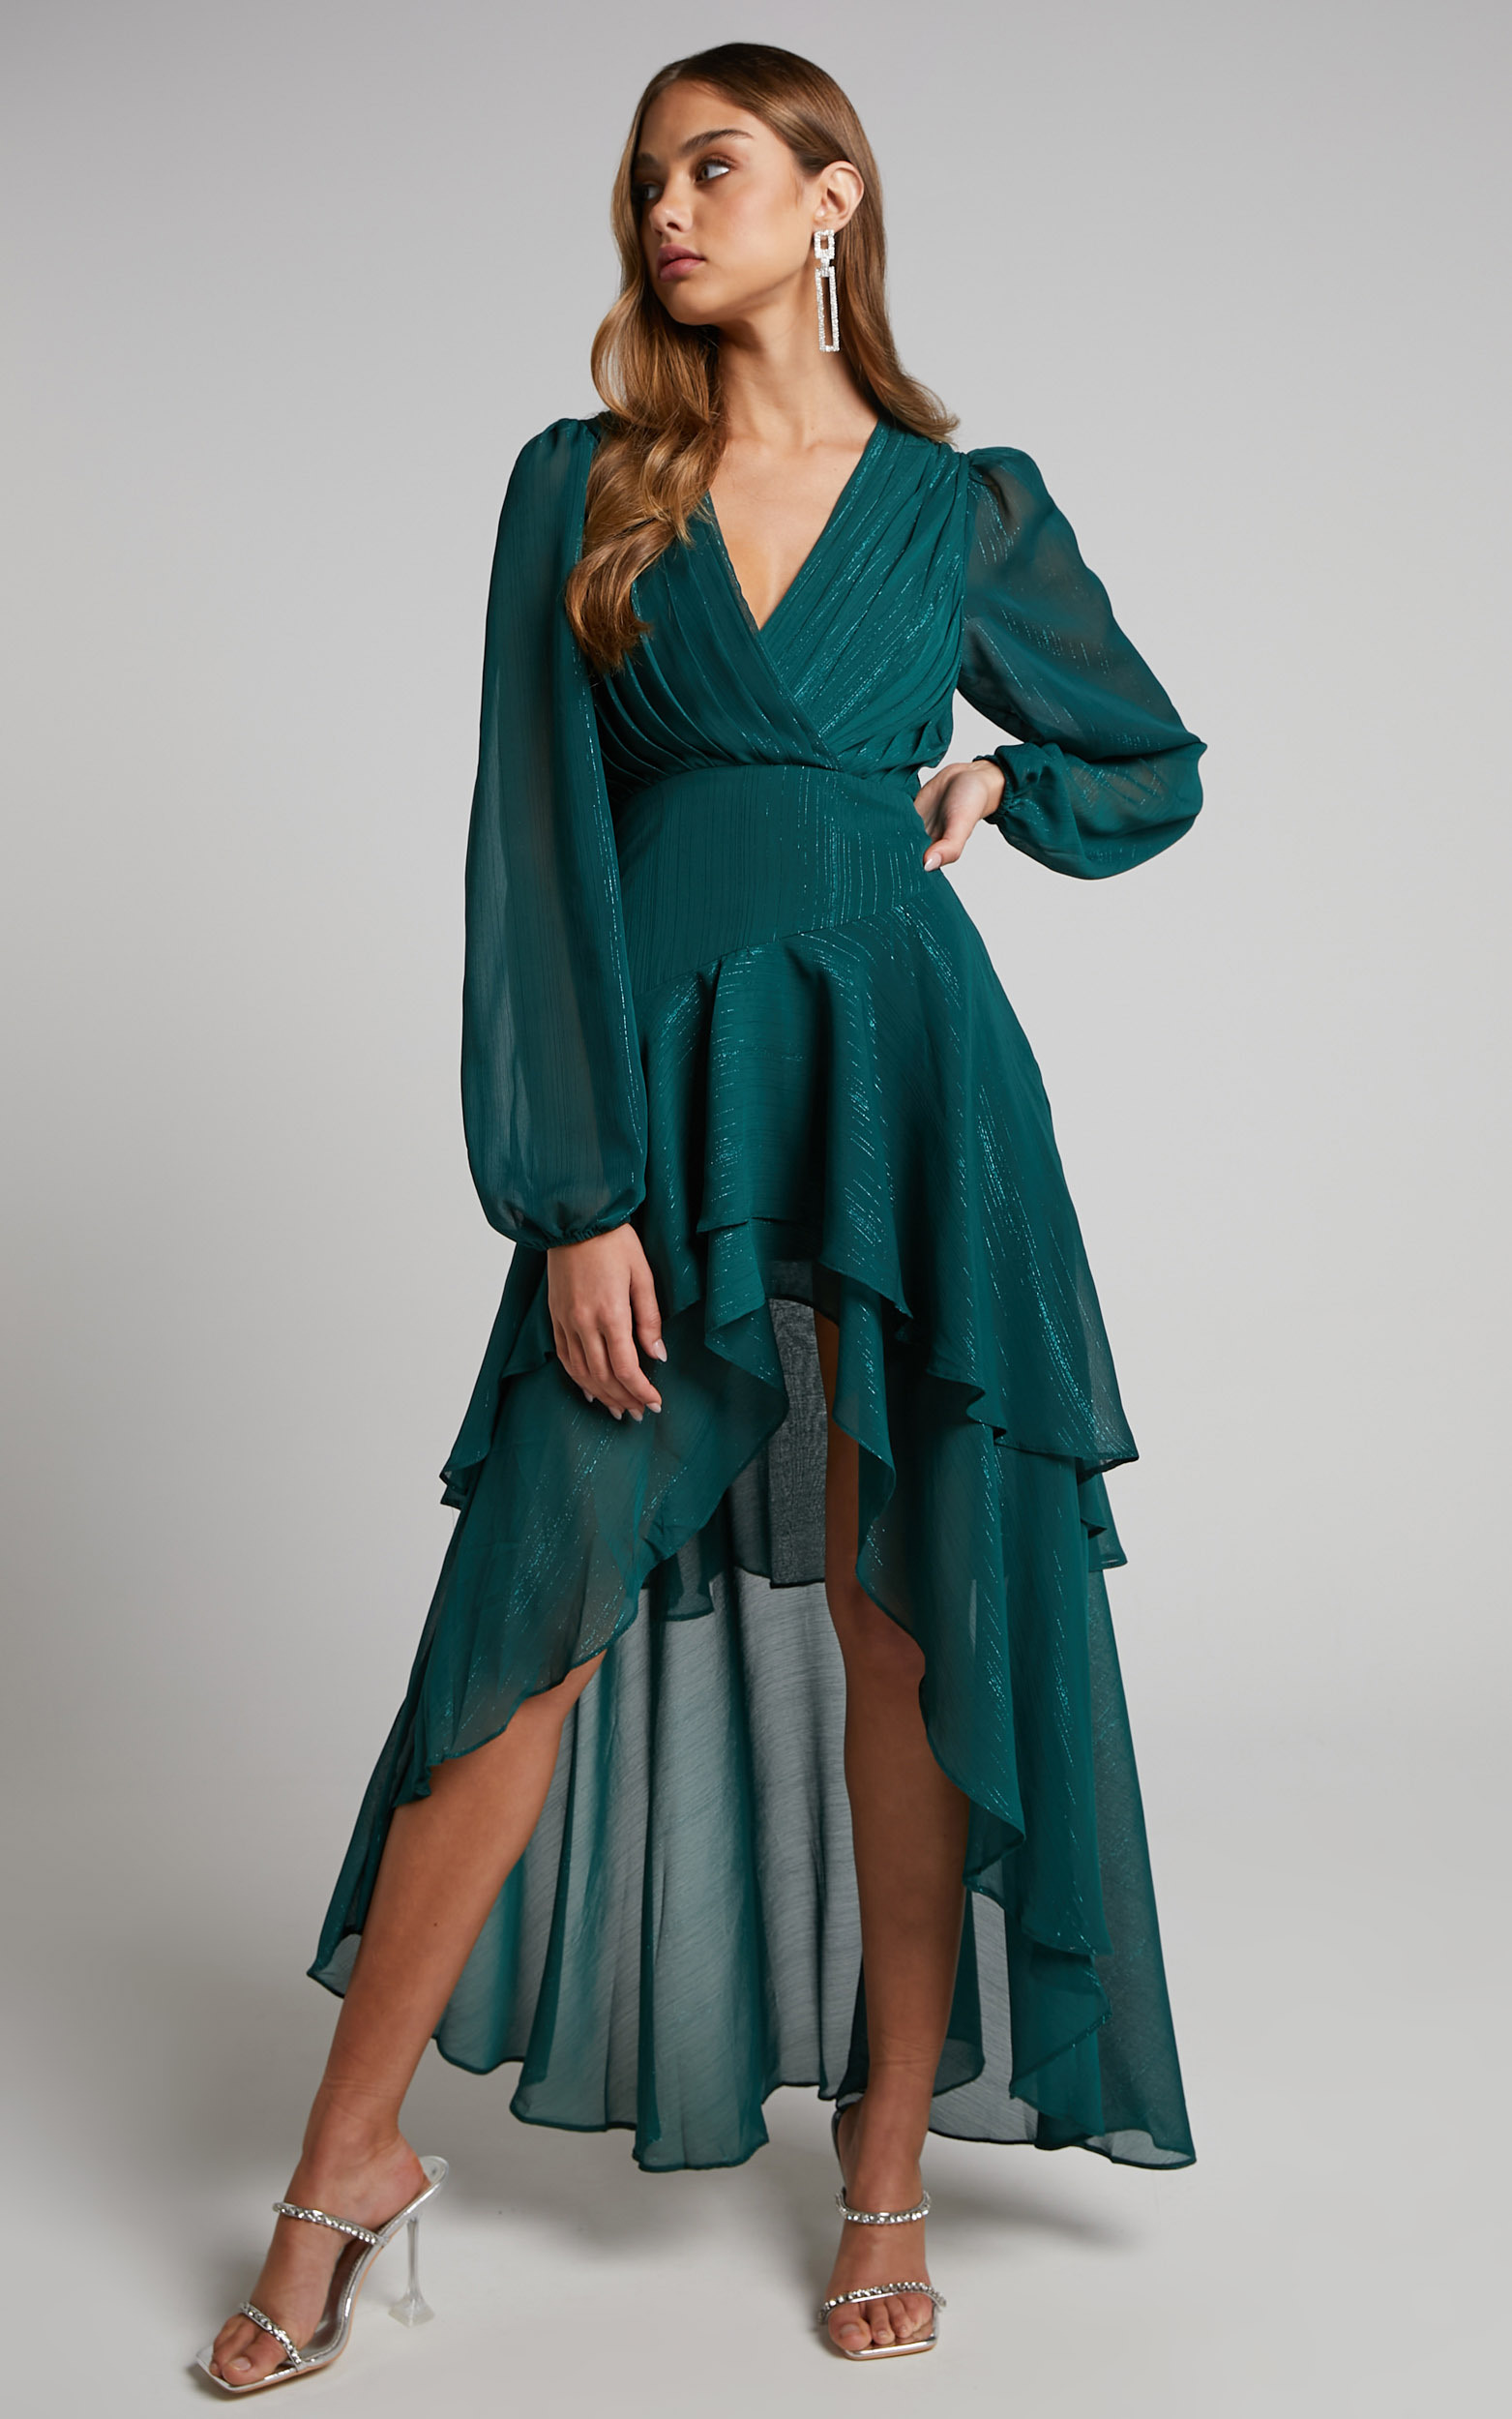 Claudita Long Sleeve Hi-Low Hem Maxi Dress in Emerald - 04, GRN1, hi-res image number null